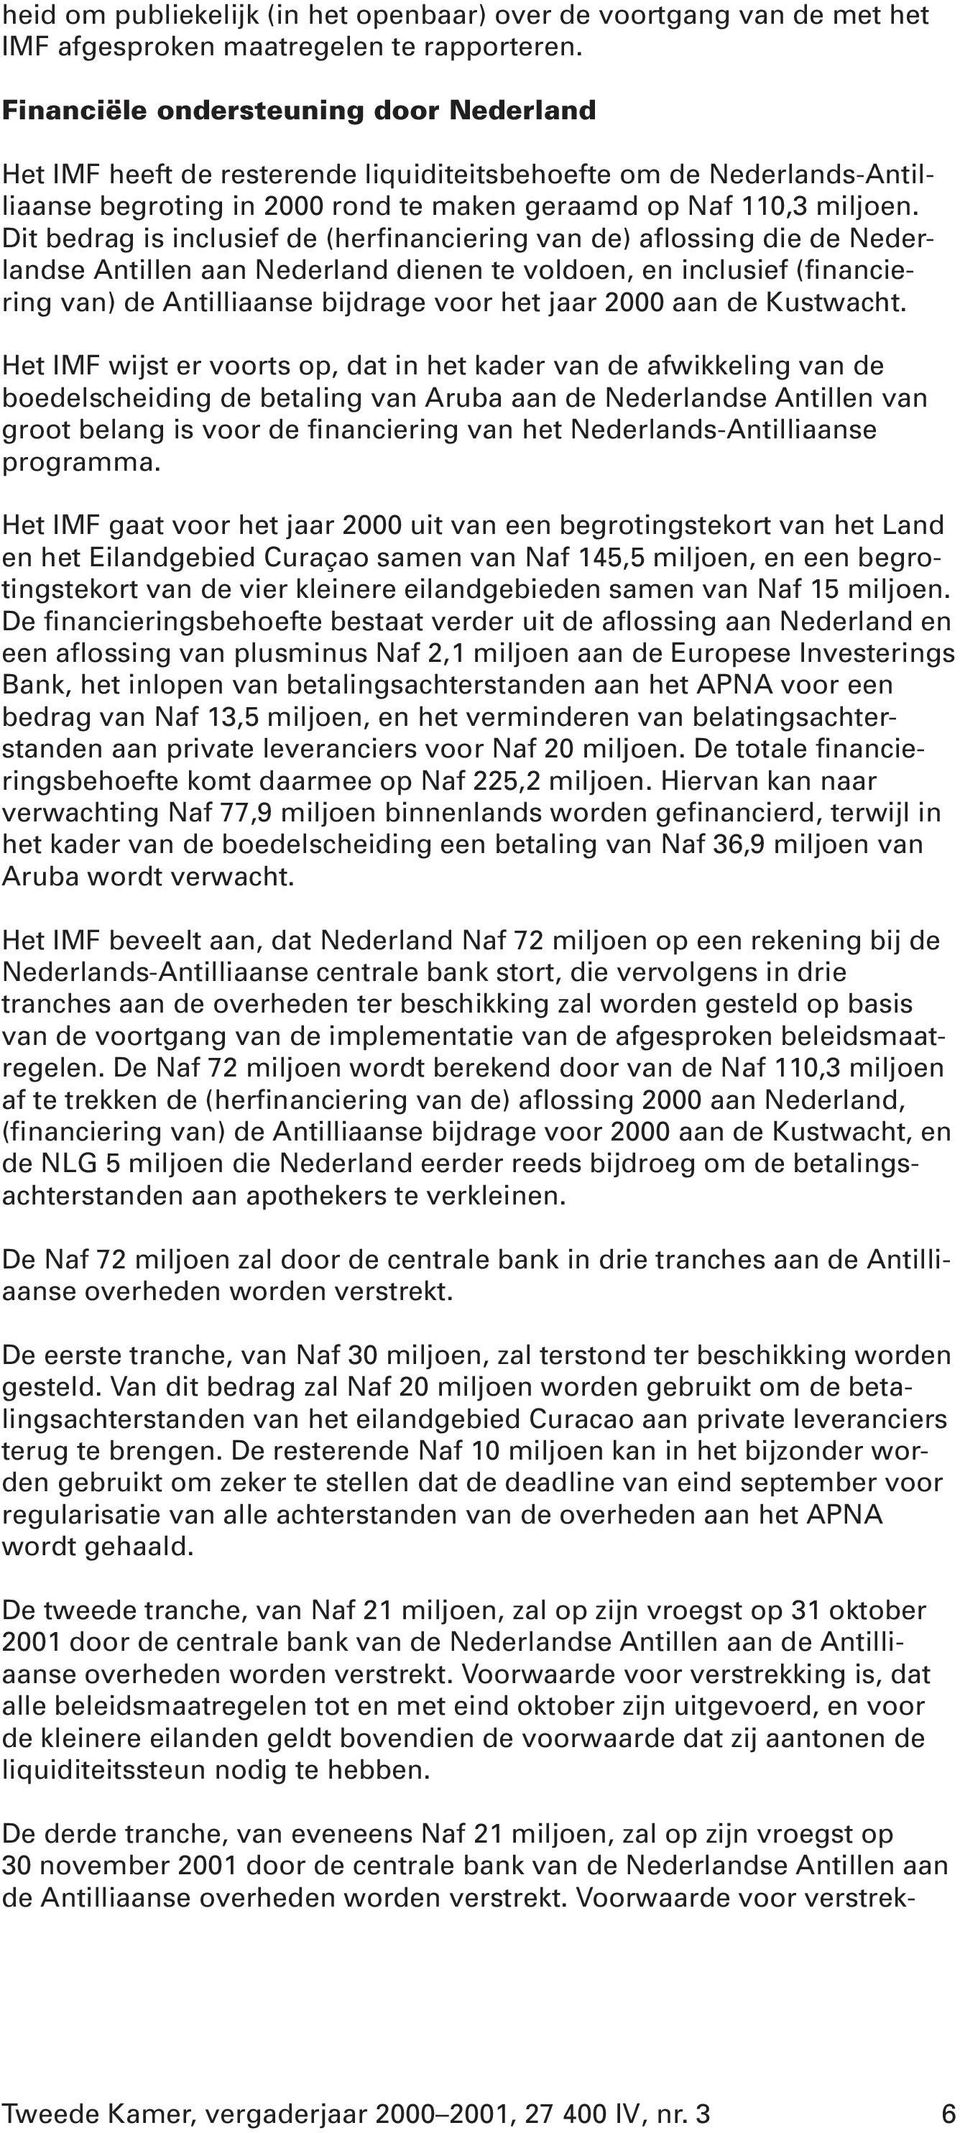 Dit bedrag is inclusief de (herfinanciering van de) aflossing die de Nederlandse Antillen aan Nederland dienen te voldoen, en inclusief (financiering van) de Antilliaanse bijdrage voor het jaar 2000